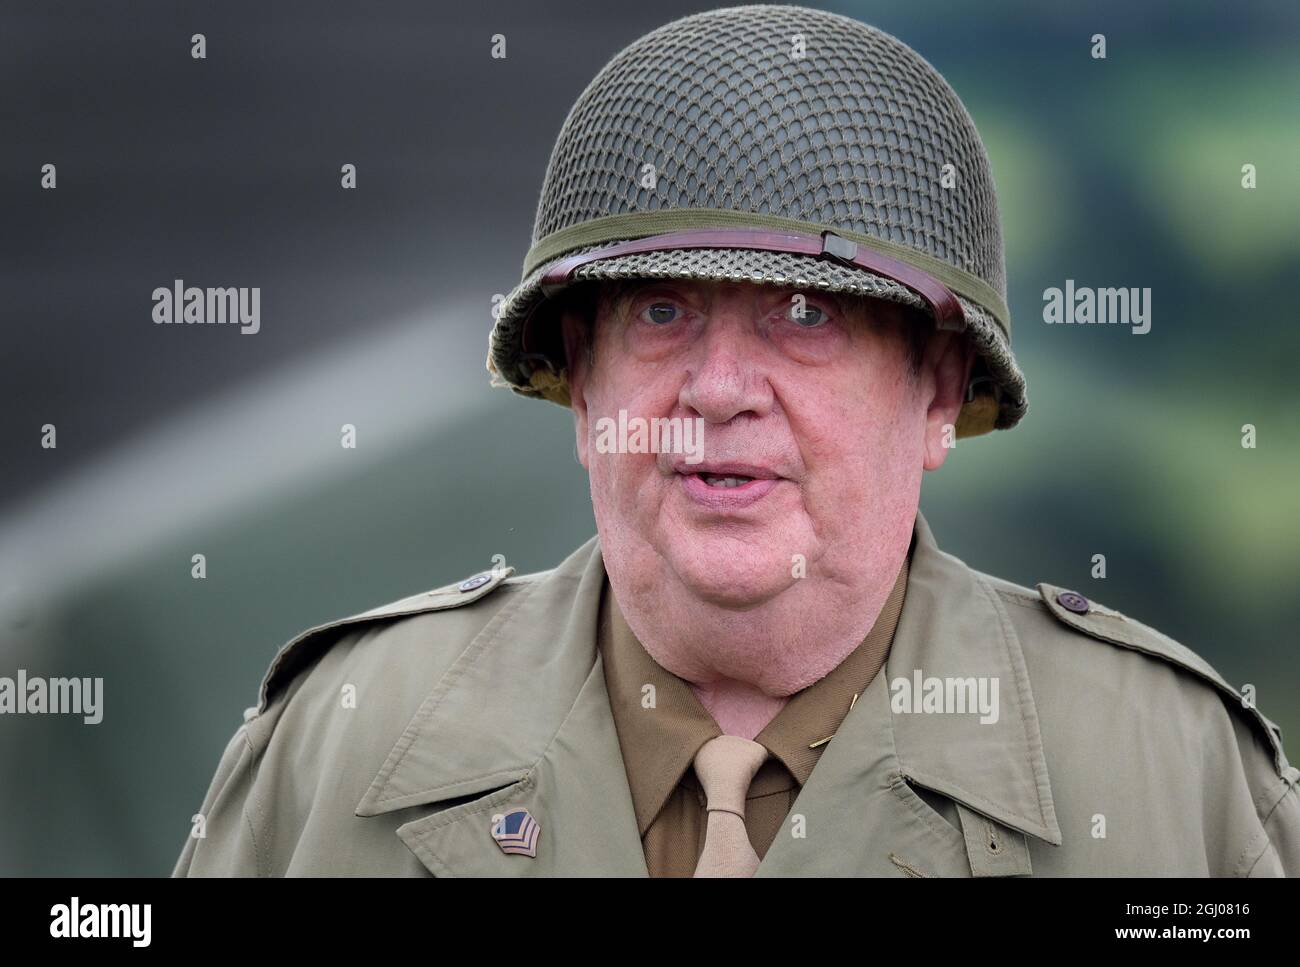 Eractoir en uniforme de soldat américain de la Seconde Guerre mondiale. Banque D'Images